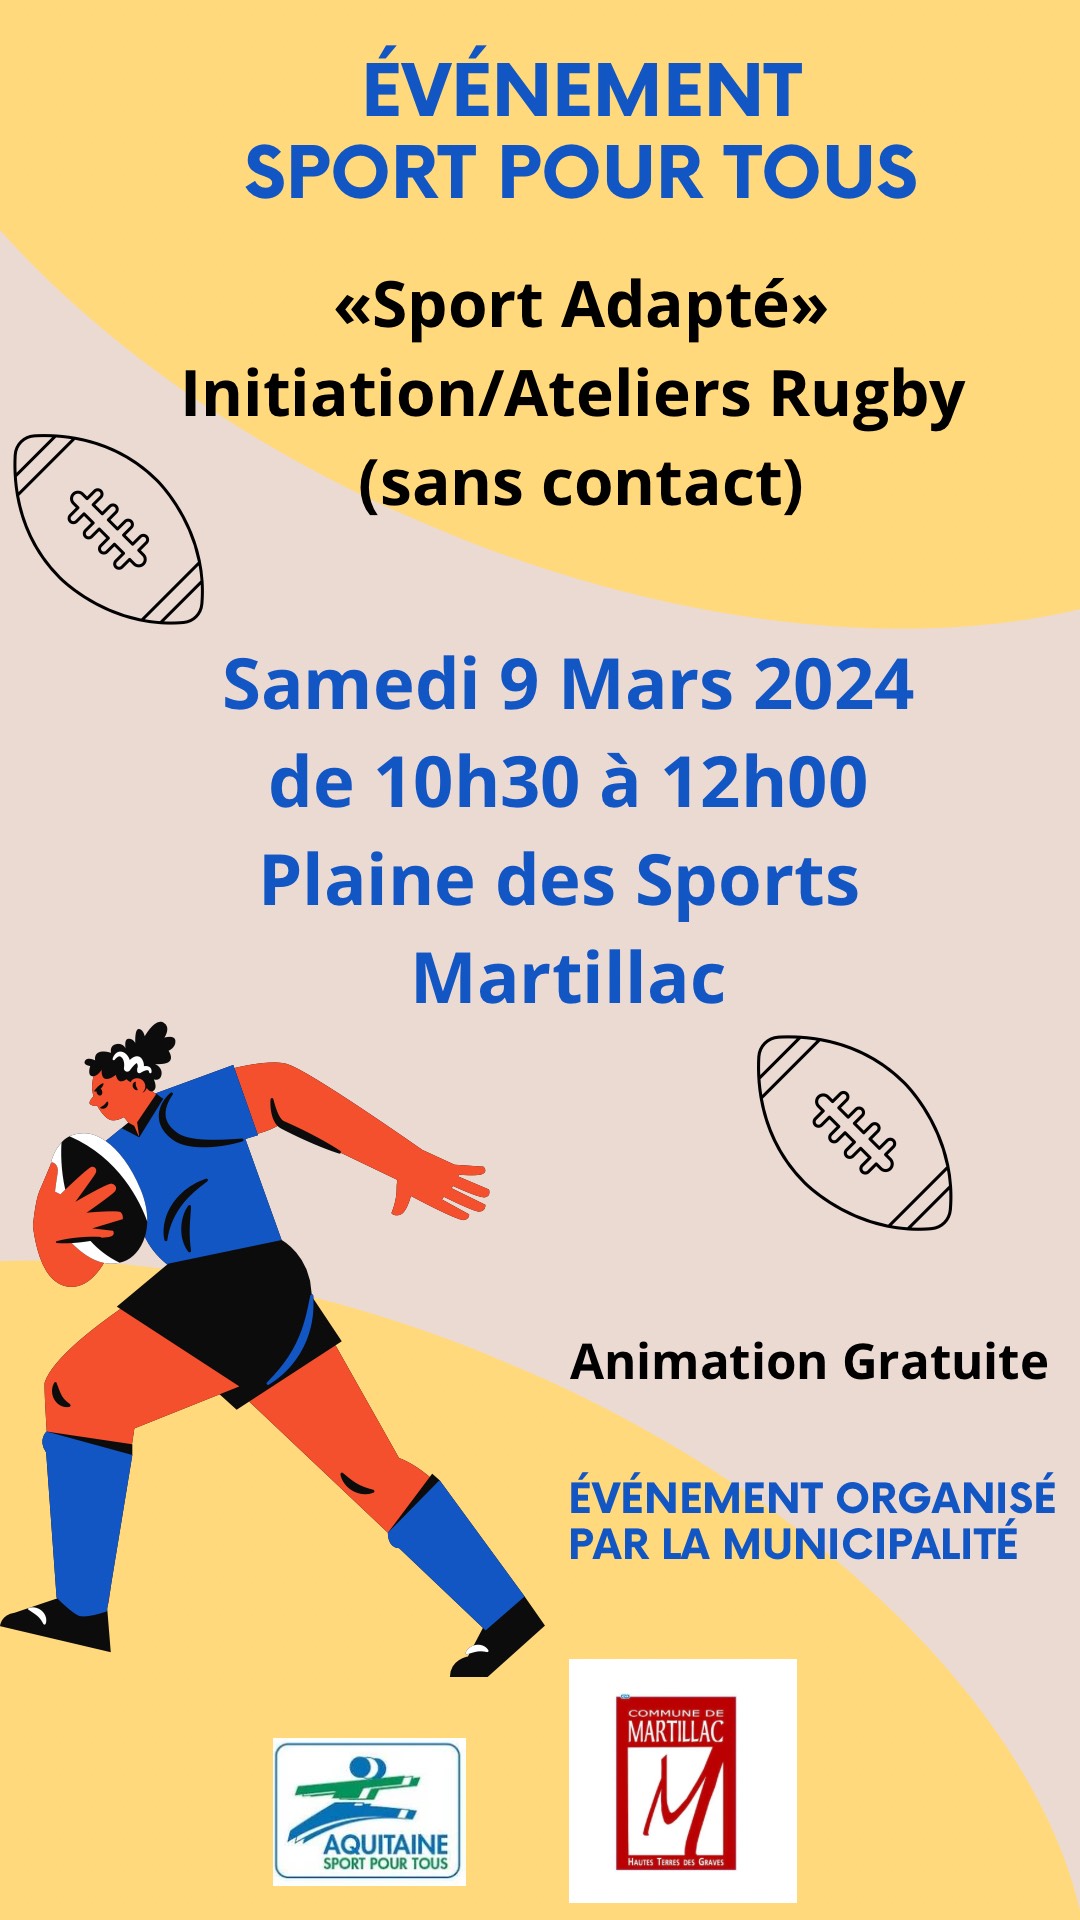 "Sport pour tous"  sous la thématique de "Sport Adapté" - Initiation/Ateliers Rugby (sans contact)